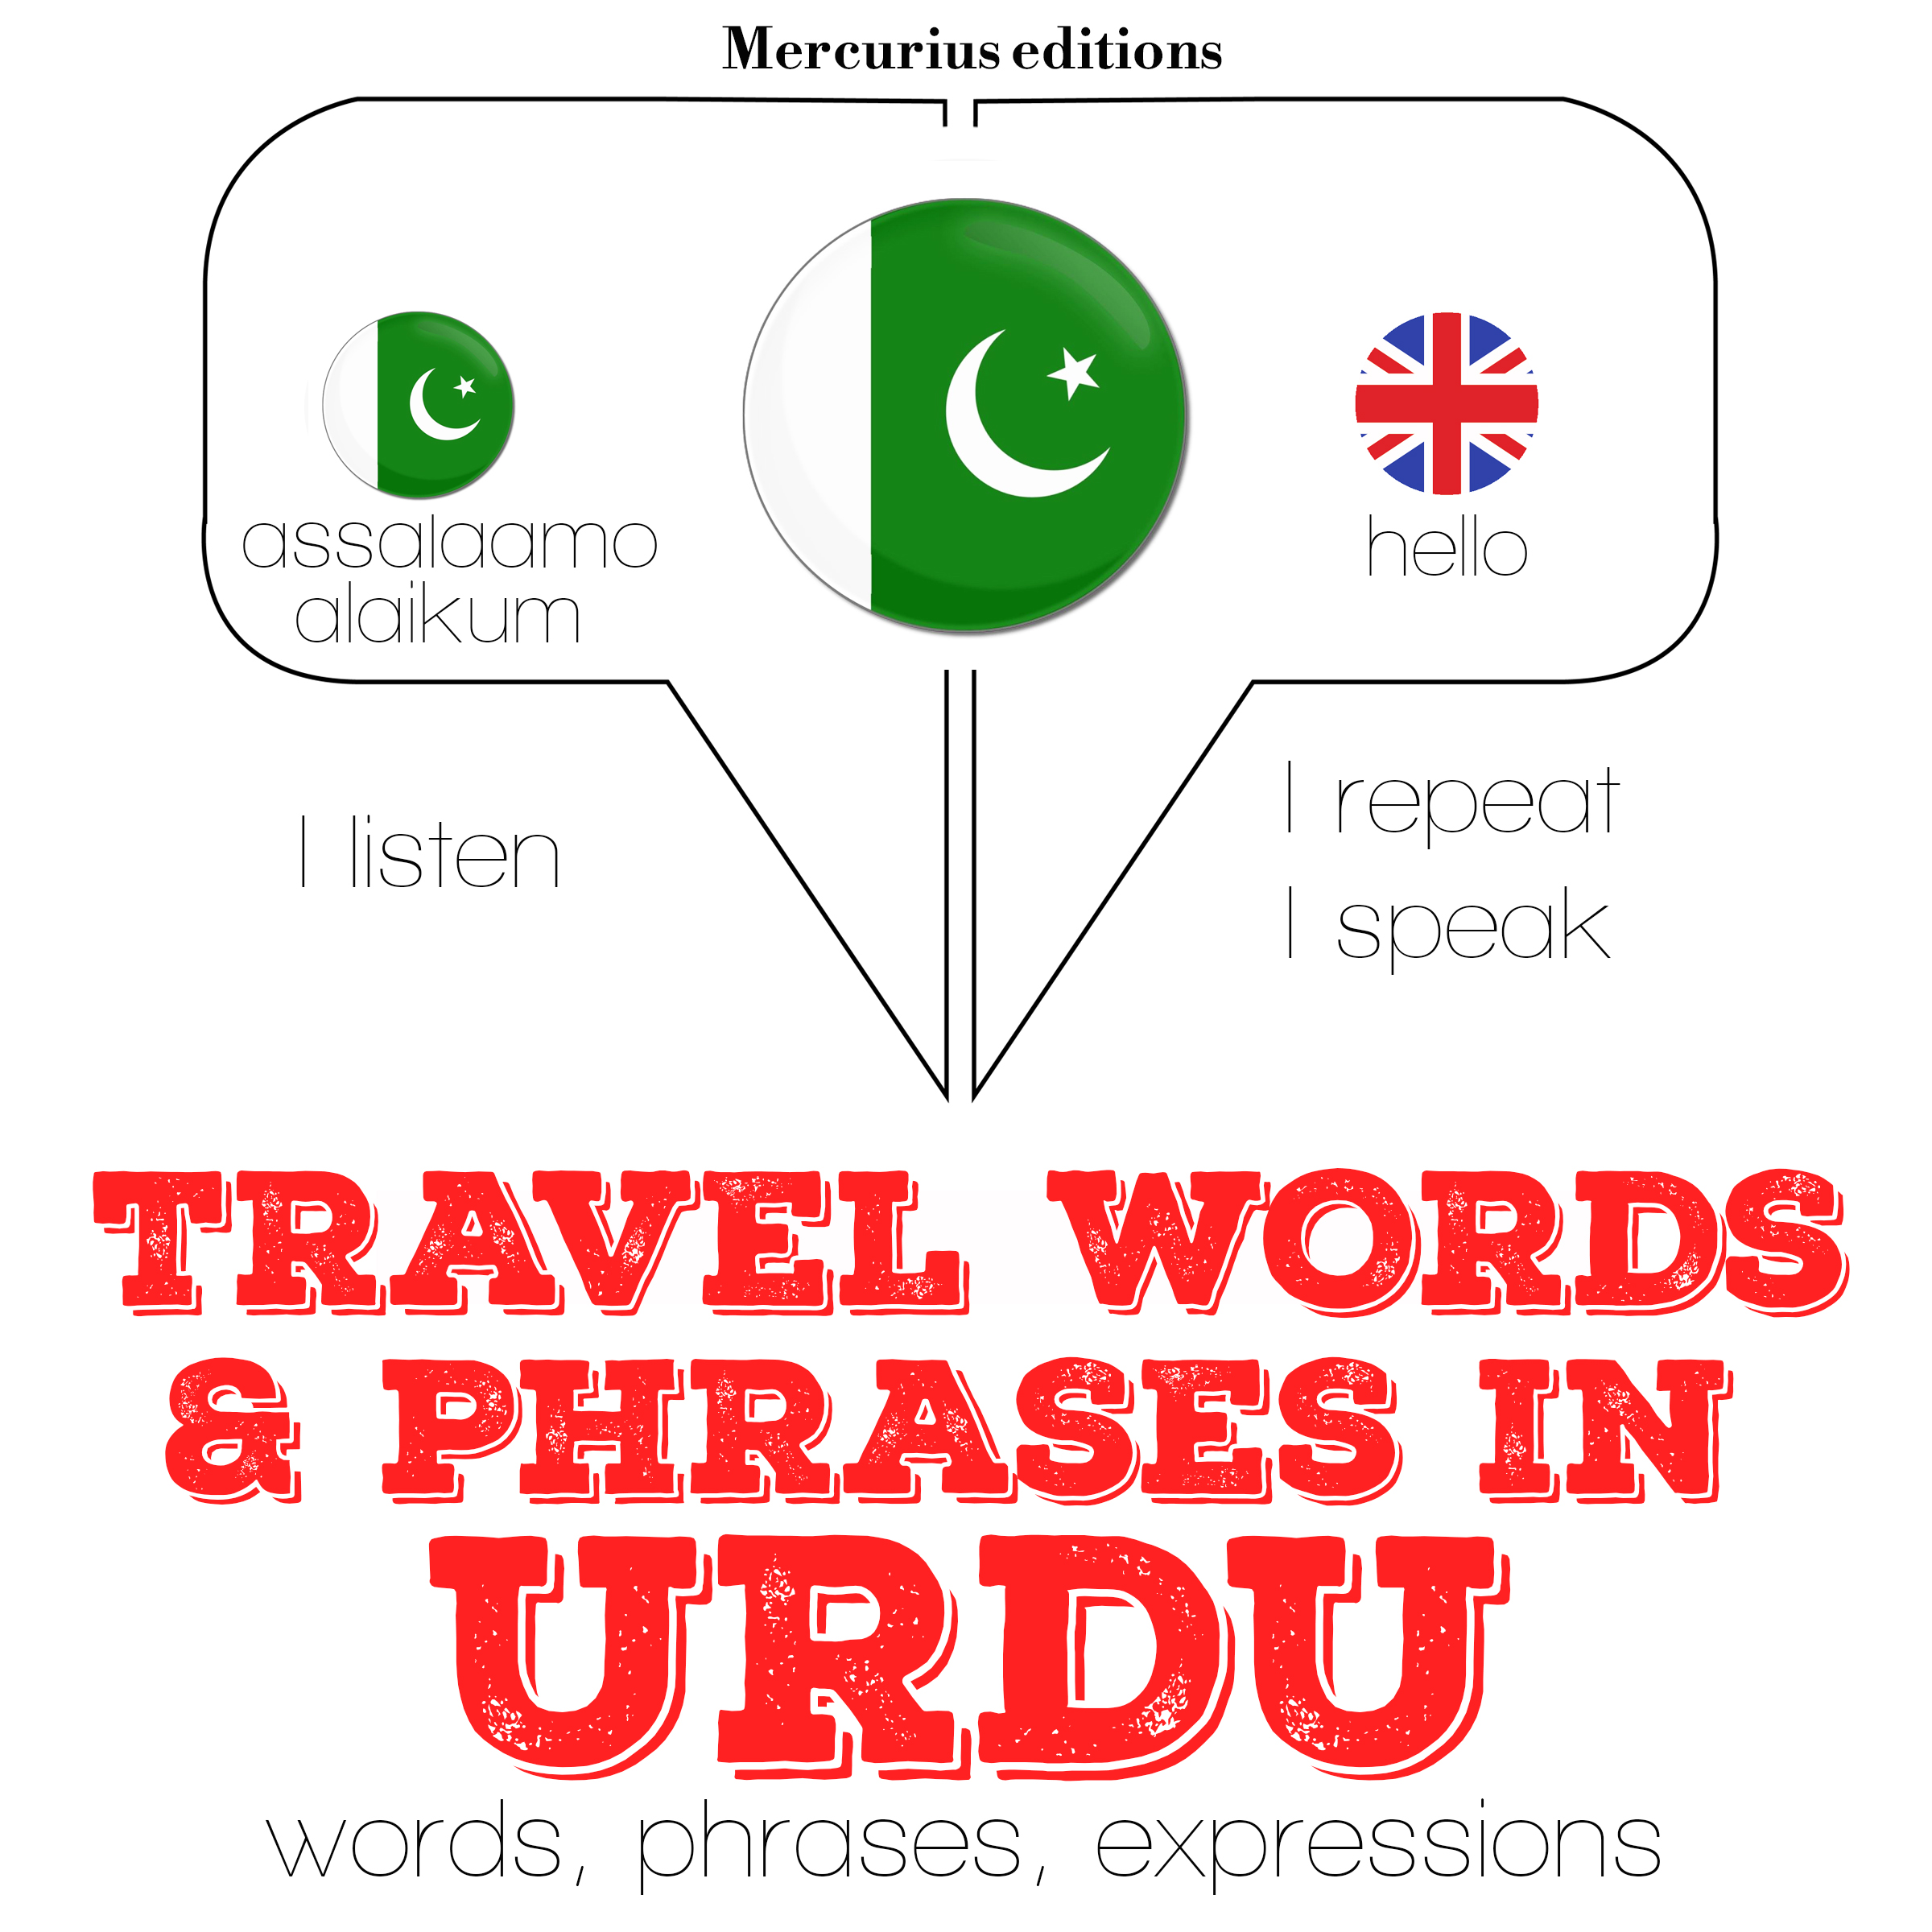 voyage time meaning in urdu